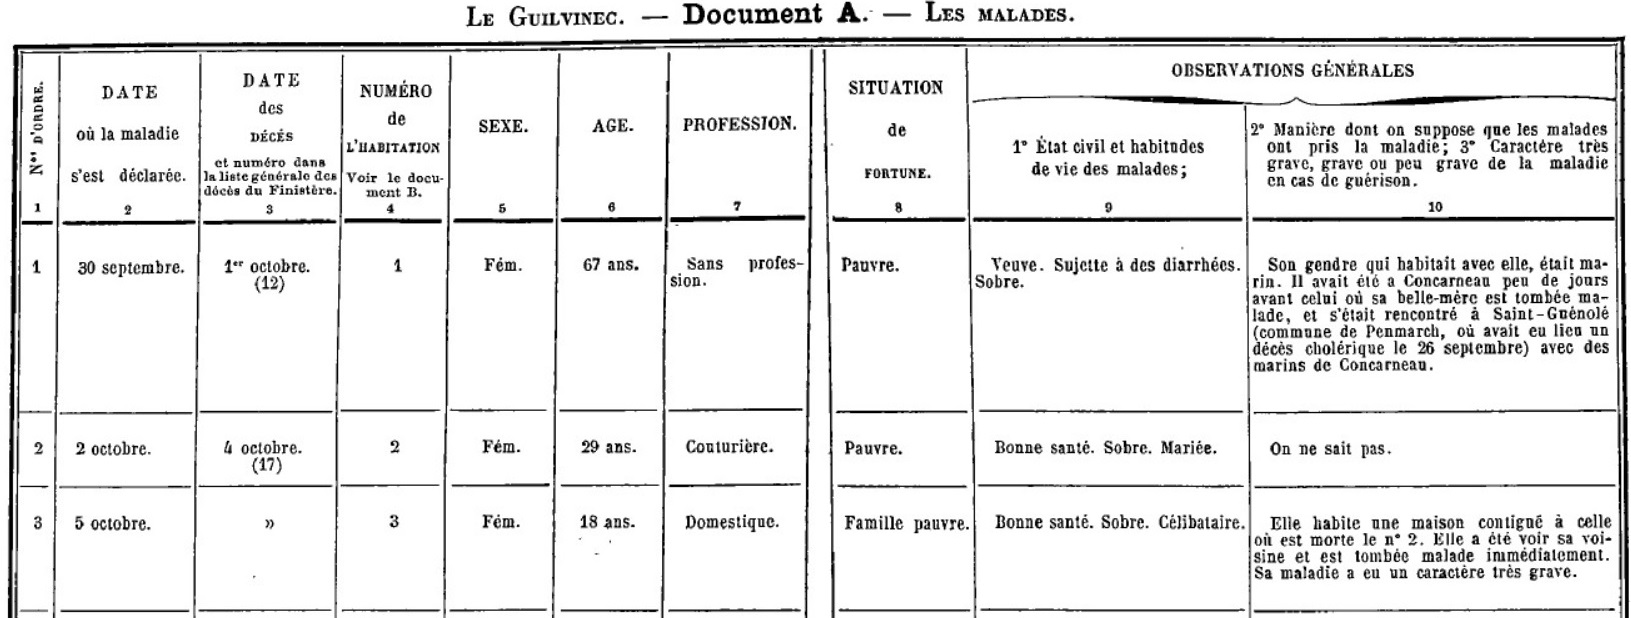 cholera 1885 1886 le guilvinec liste